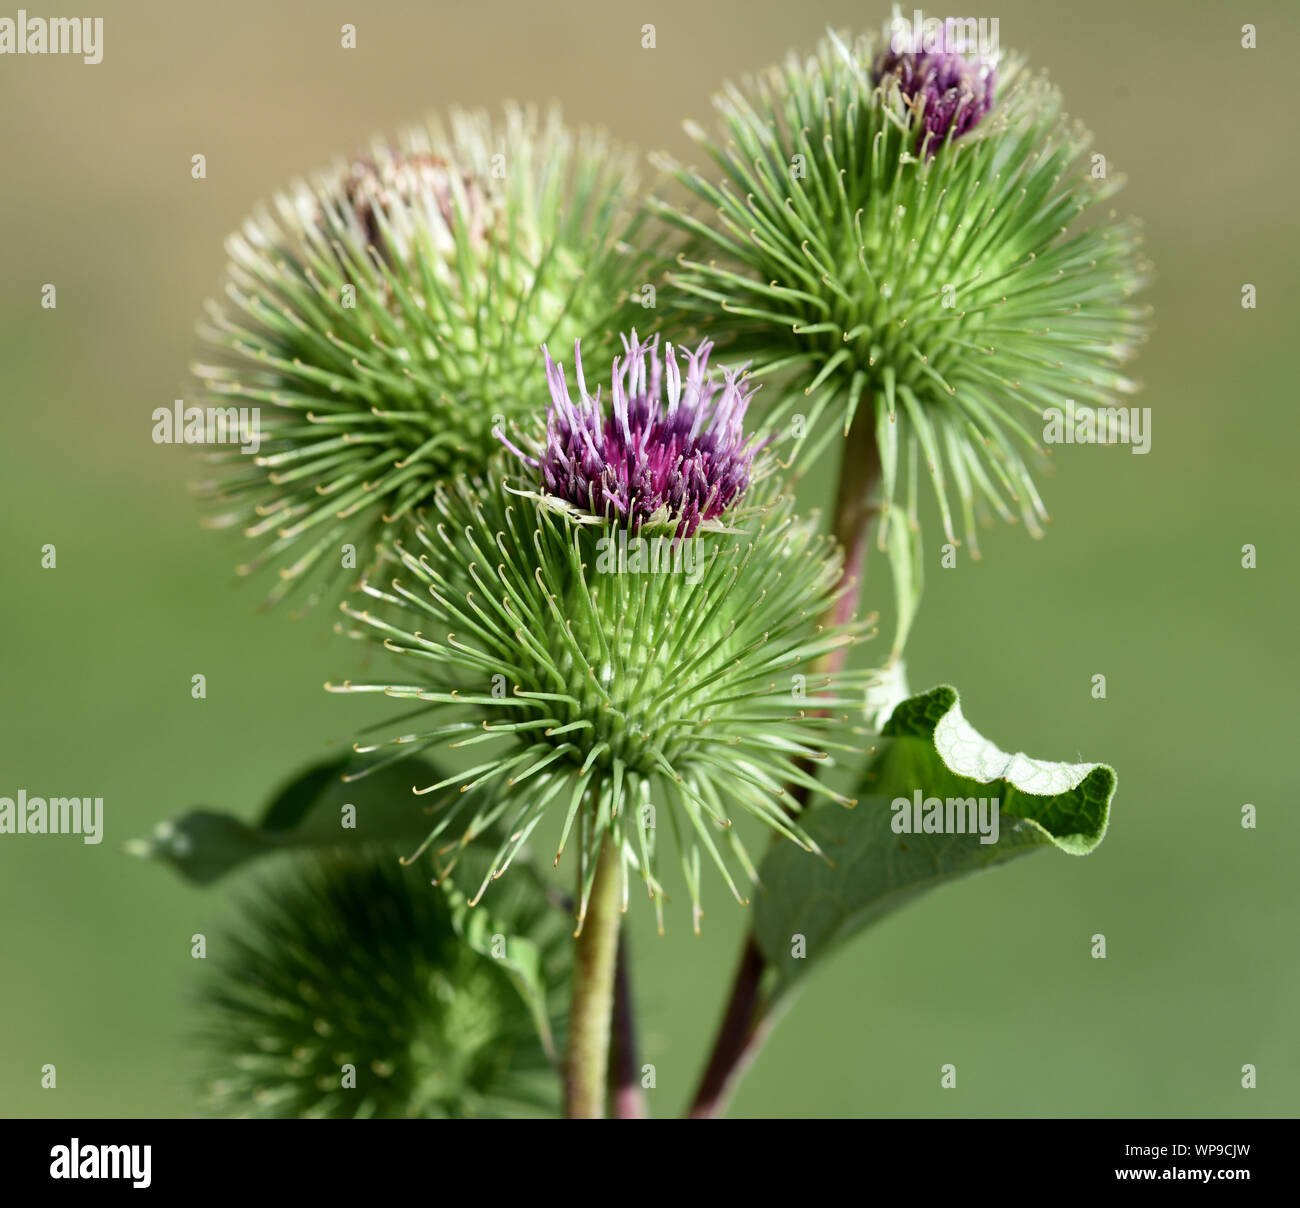 Grosse Klette, arctium, lappa, ist eine wichtige Heilpflanze mit lila Blueten und wird in der Medizin verwendet. Big burdock, arctium, lappa, is an im Stock Photo